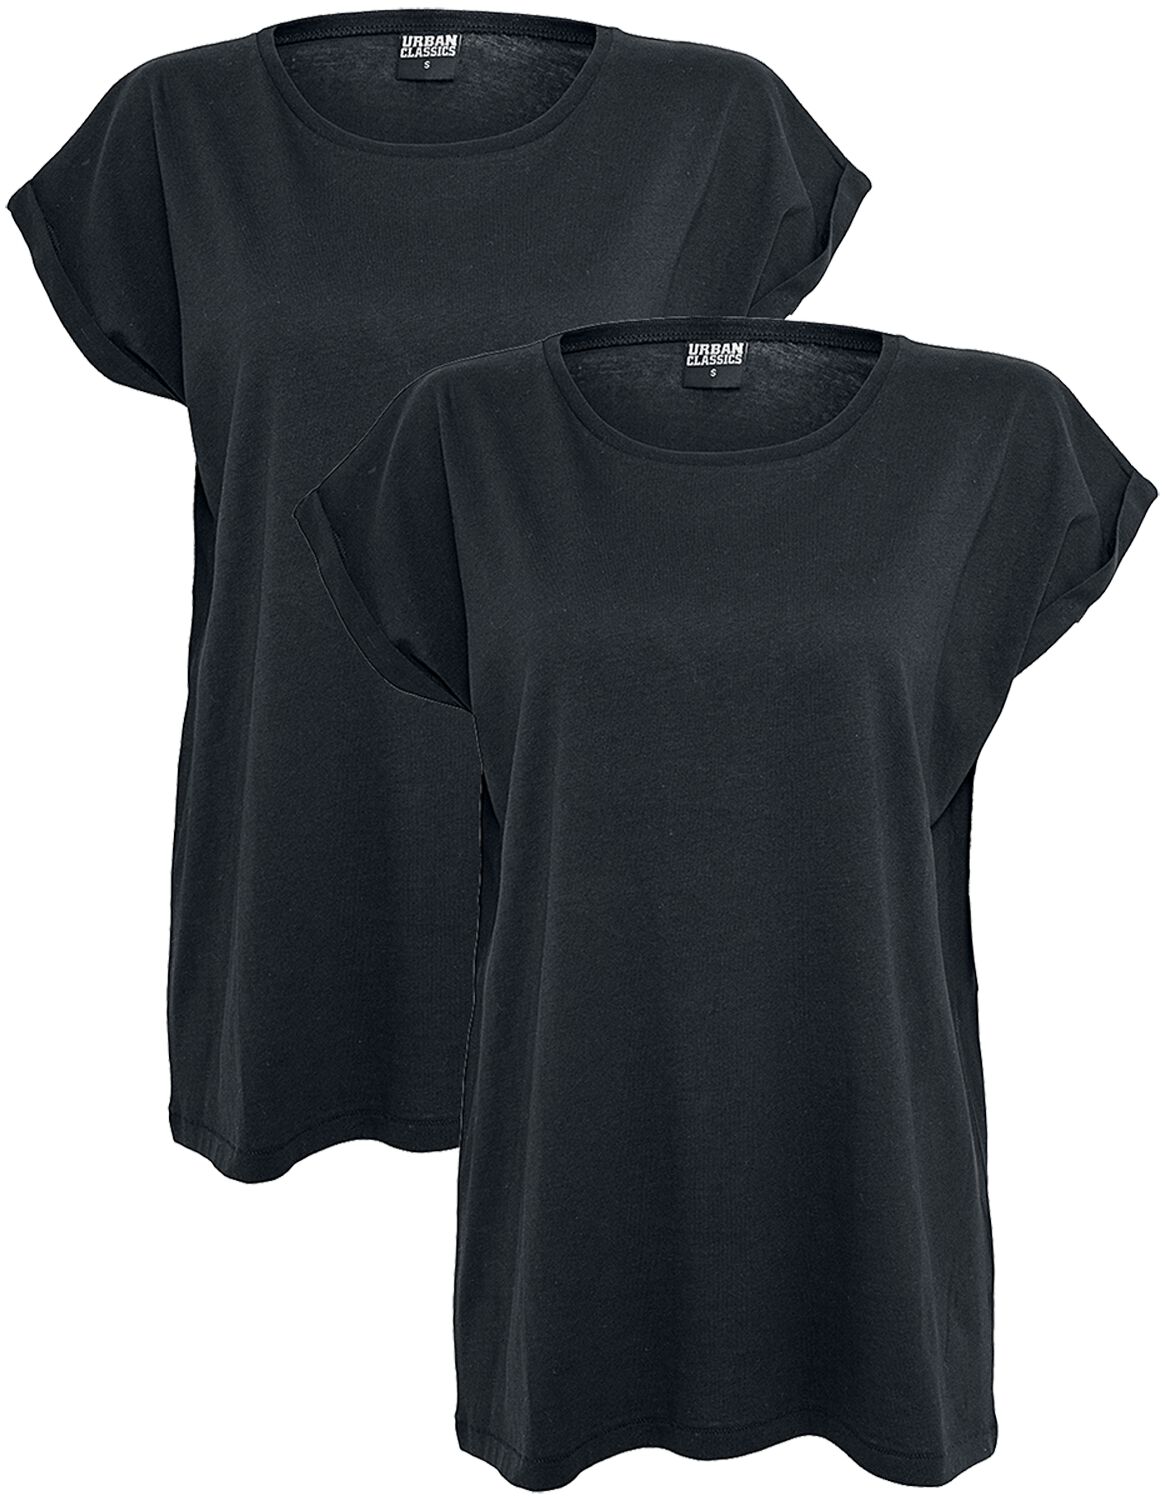 Urban Classics T-Shirt - Ladies Extended Shoulder Tee 2 Pack - XS bis 5XL - für Damen - Größe 4XL - schwarz